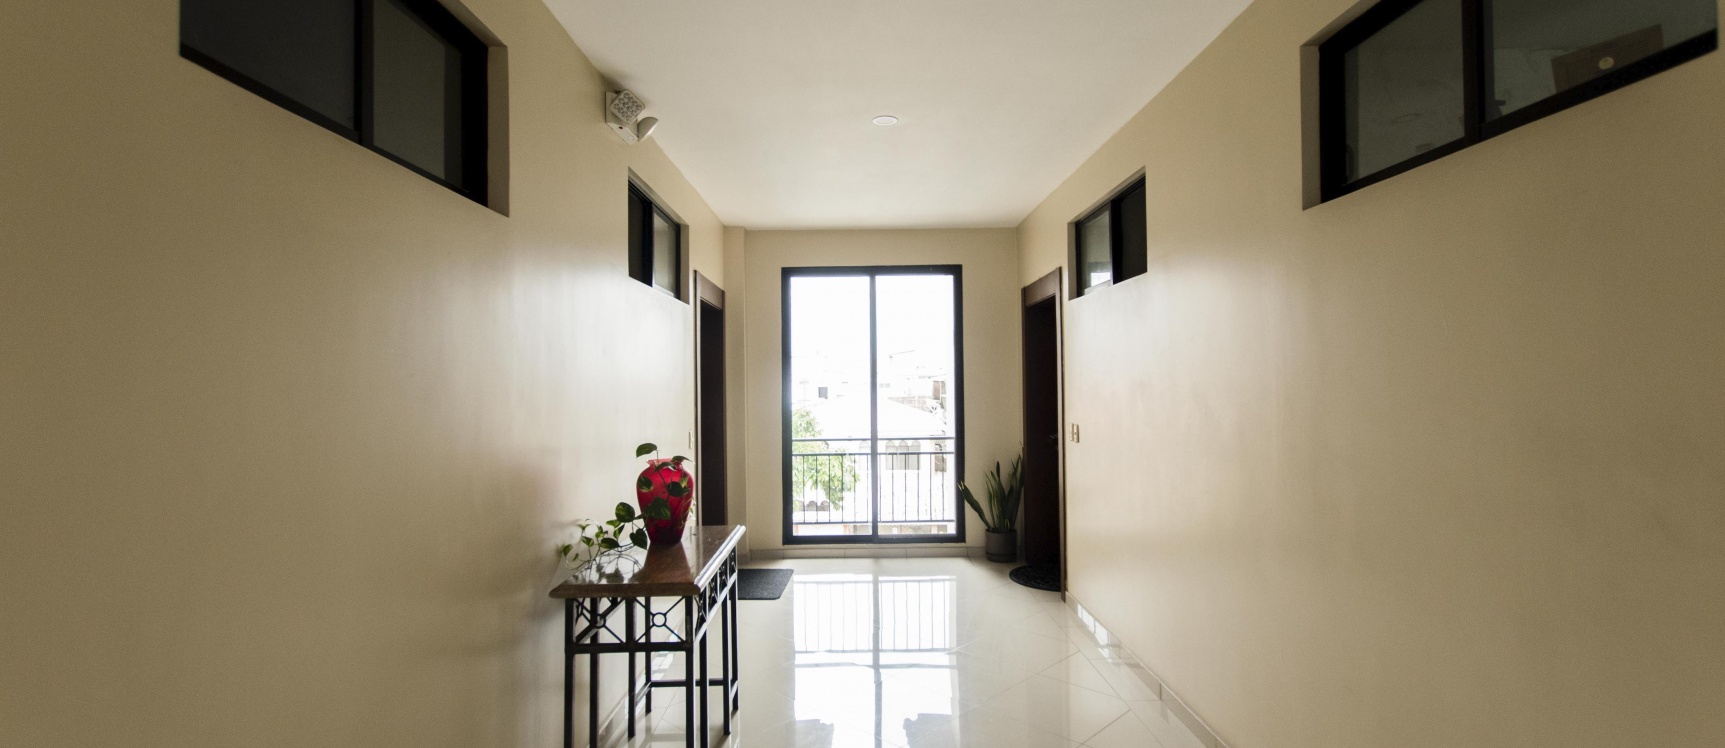 GeoBienes - Departamento en venta ubicado en Condominio Palmira, Vía Samborondón - Plusvalia Guayaquil Casas de venta y alquiler Inmobiliaria Ecuador